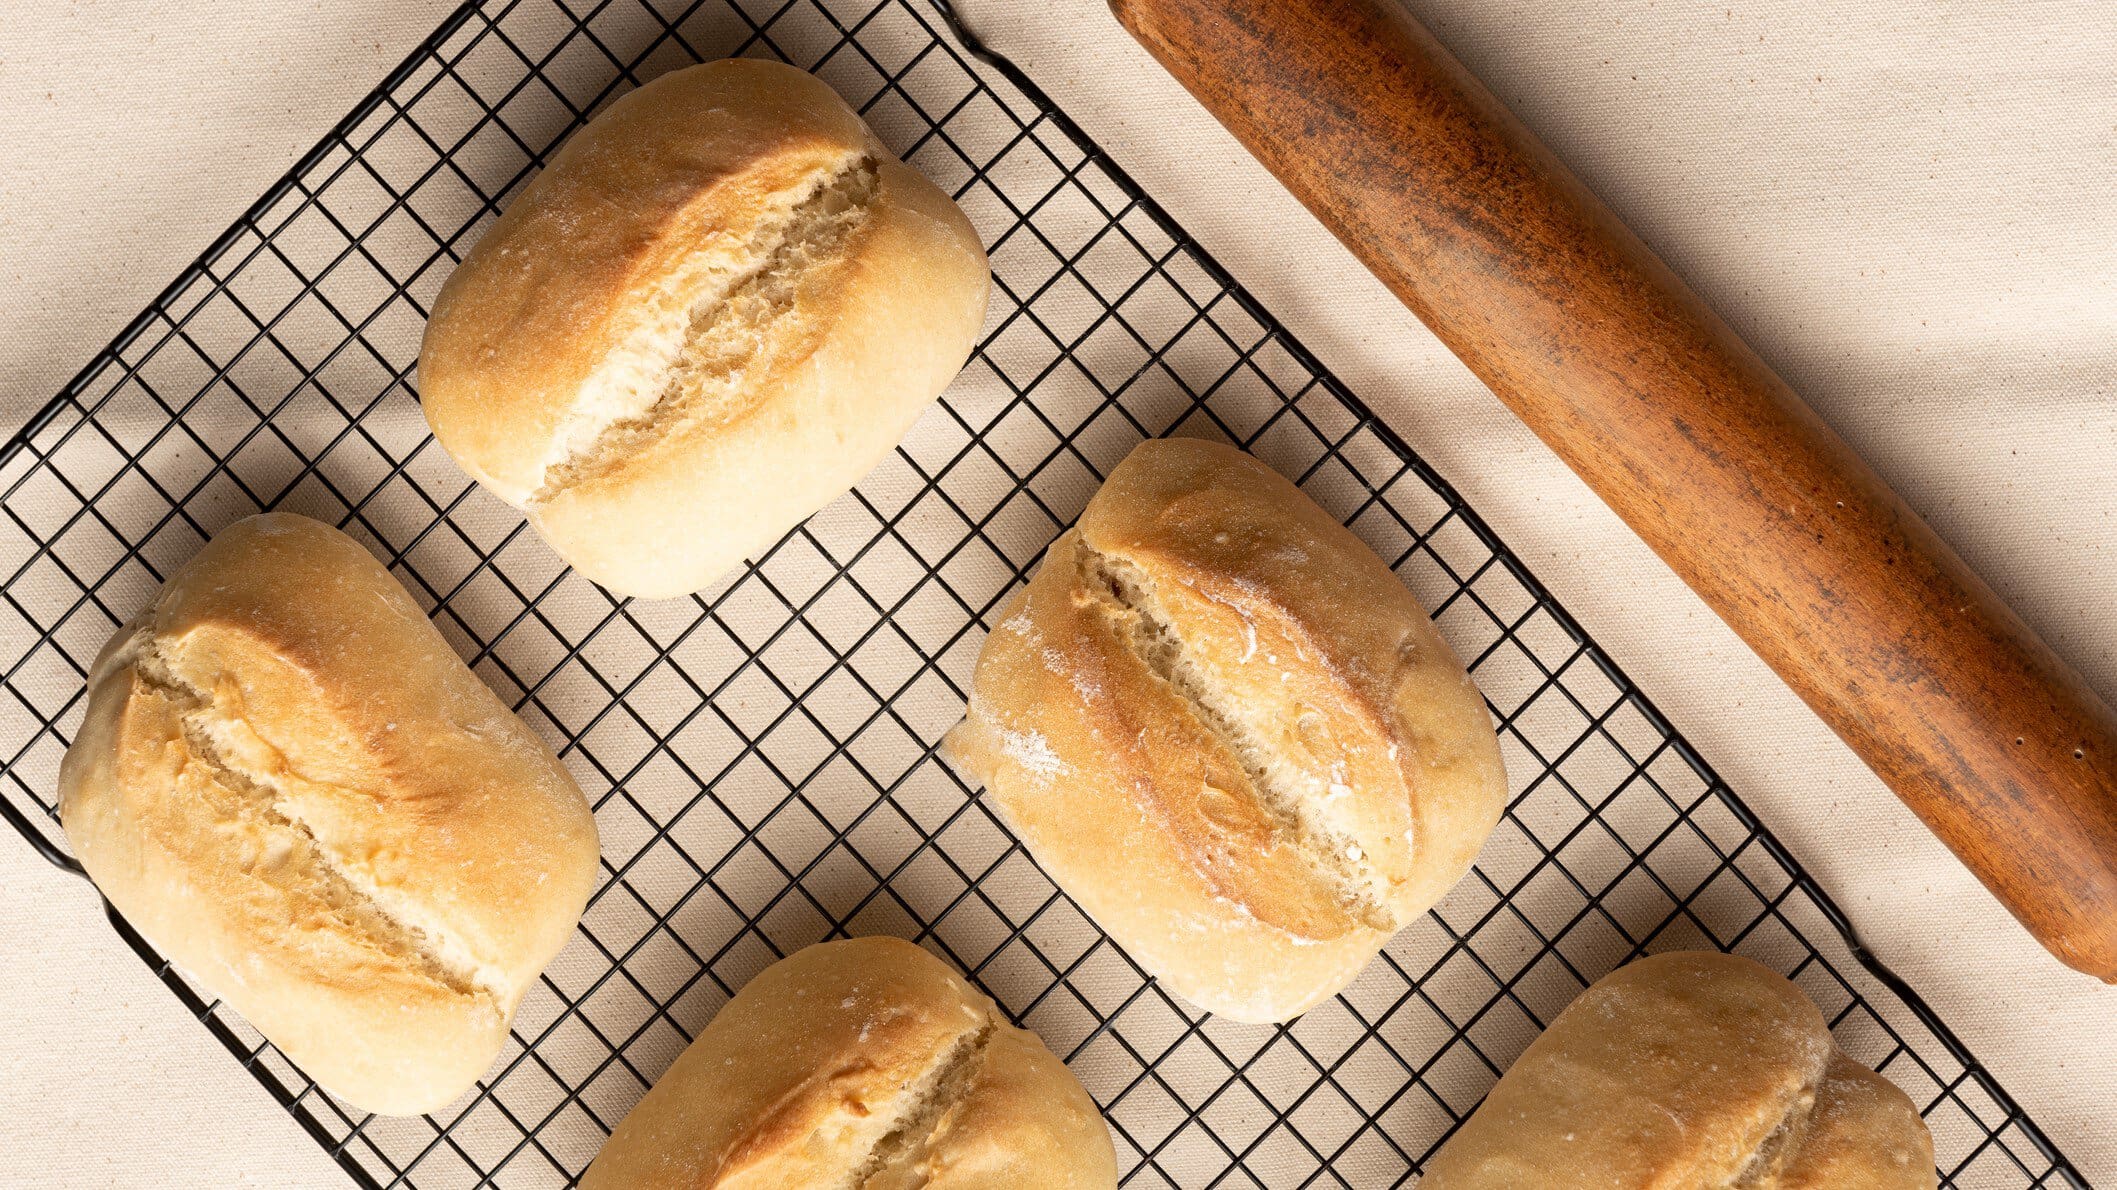 Auf einem Ofengitter liegen mehrere selbstgemachte Brötchen ohne Gluten. Sie sind goldbraun gebacken.